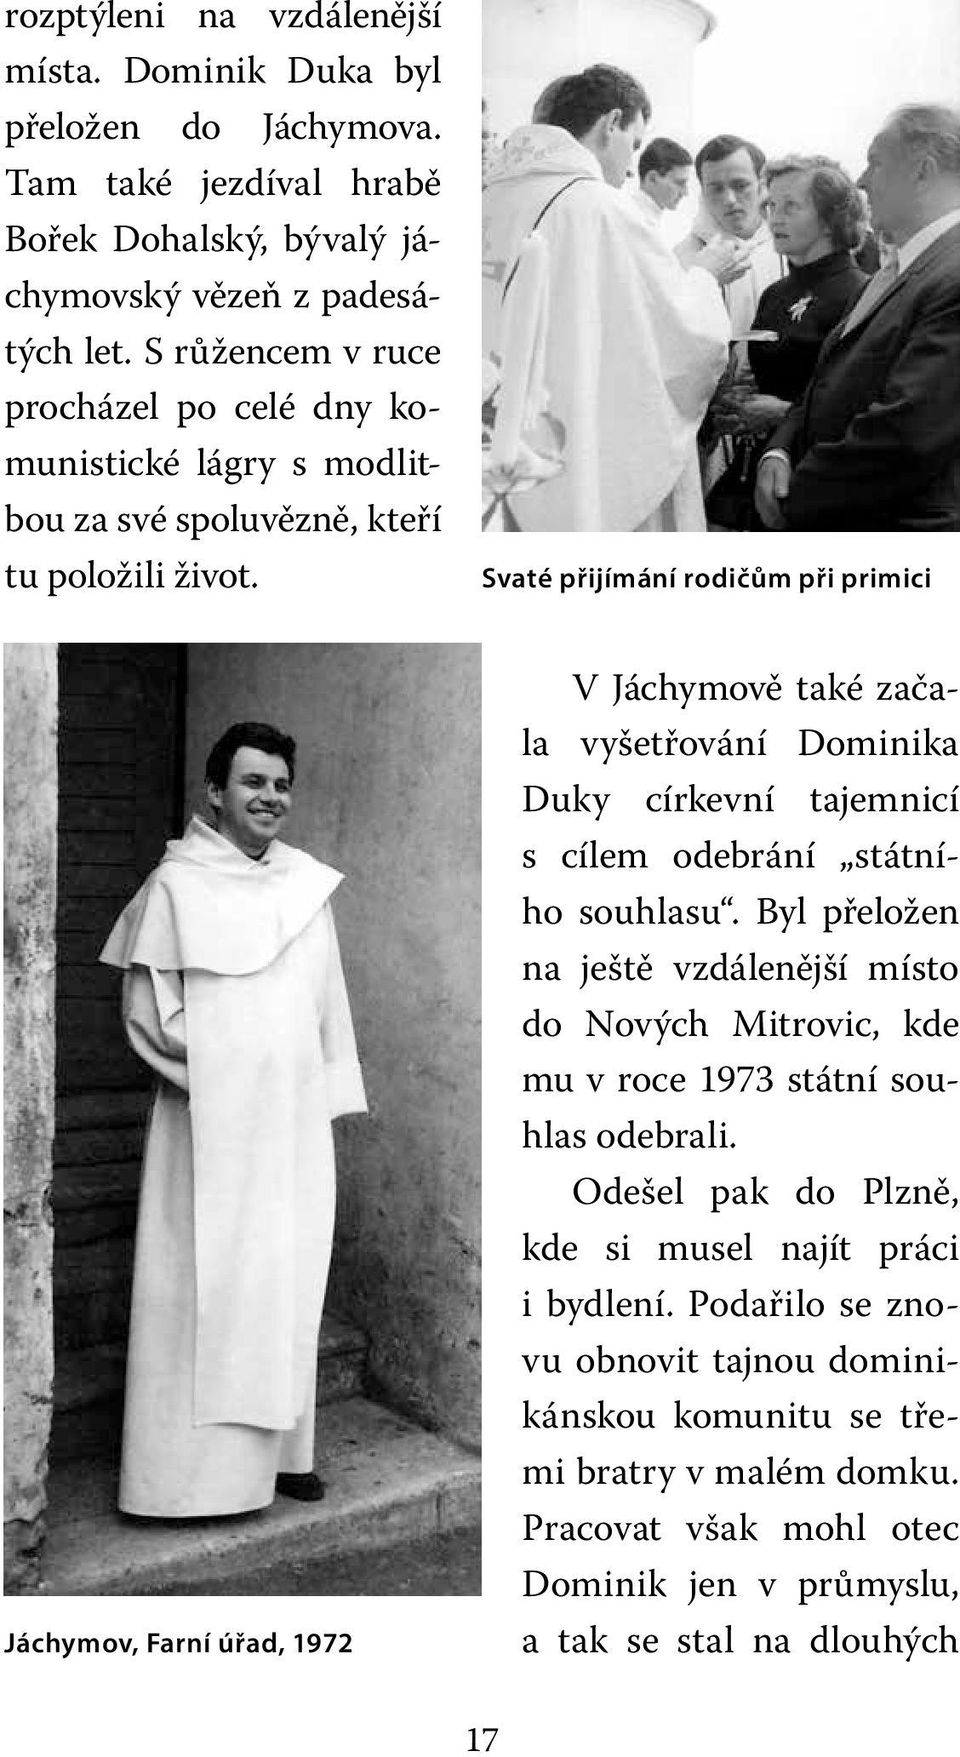 Svaté přijímání rodičům při primici Jáchymov, Farní úřad, 1972 V Jáchymově také začala vyšetřování Dominika Duky církevní tajemnicí s cílem odebrání státního souhlasu.